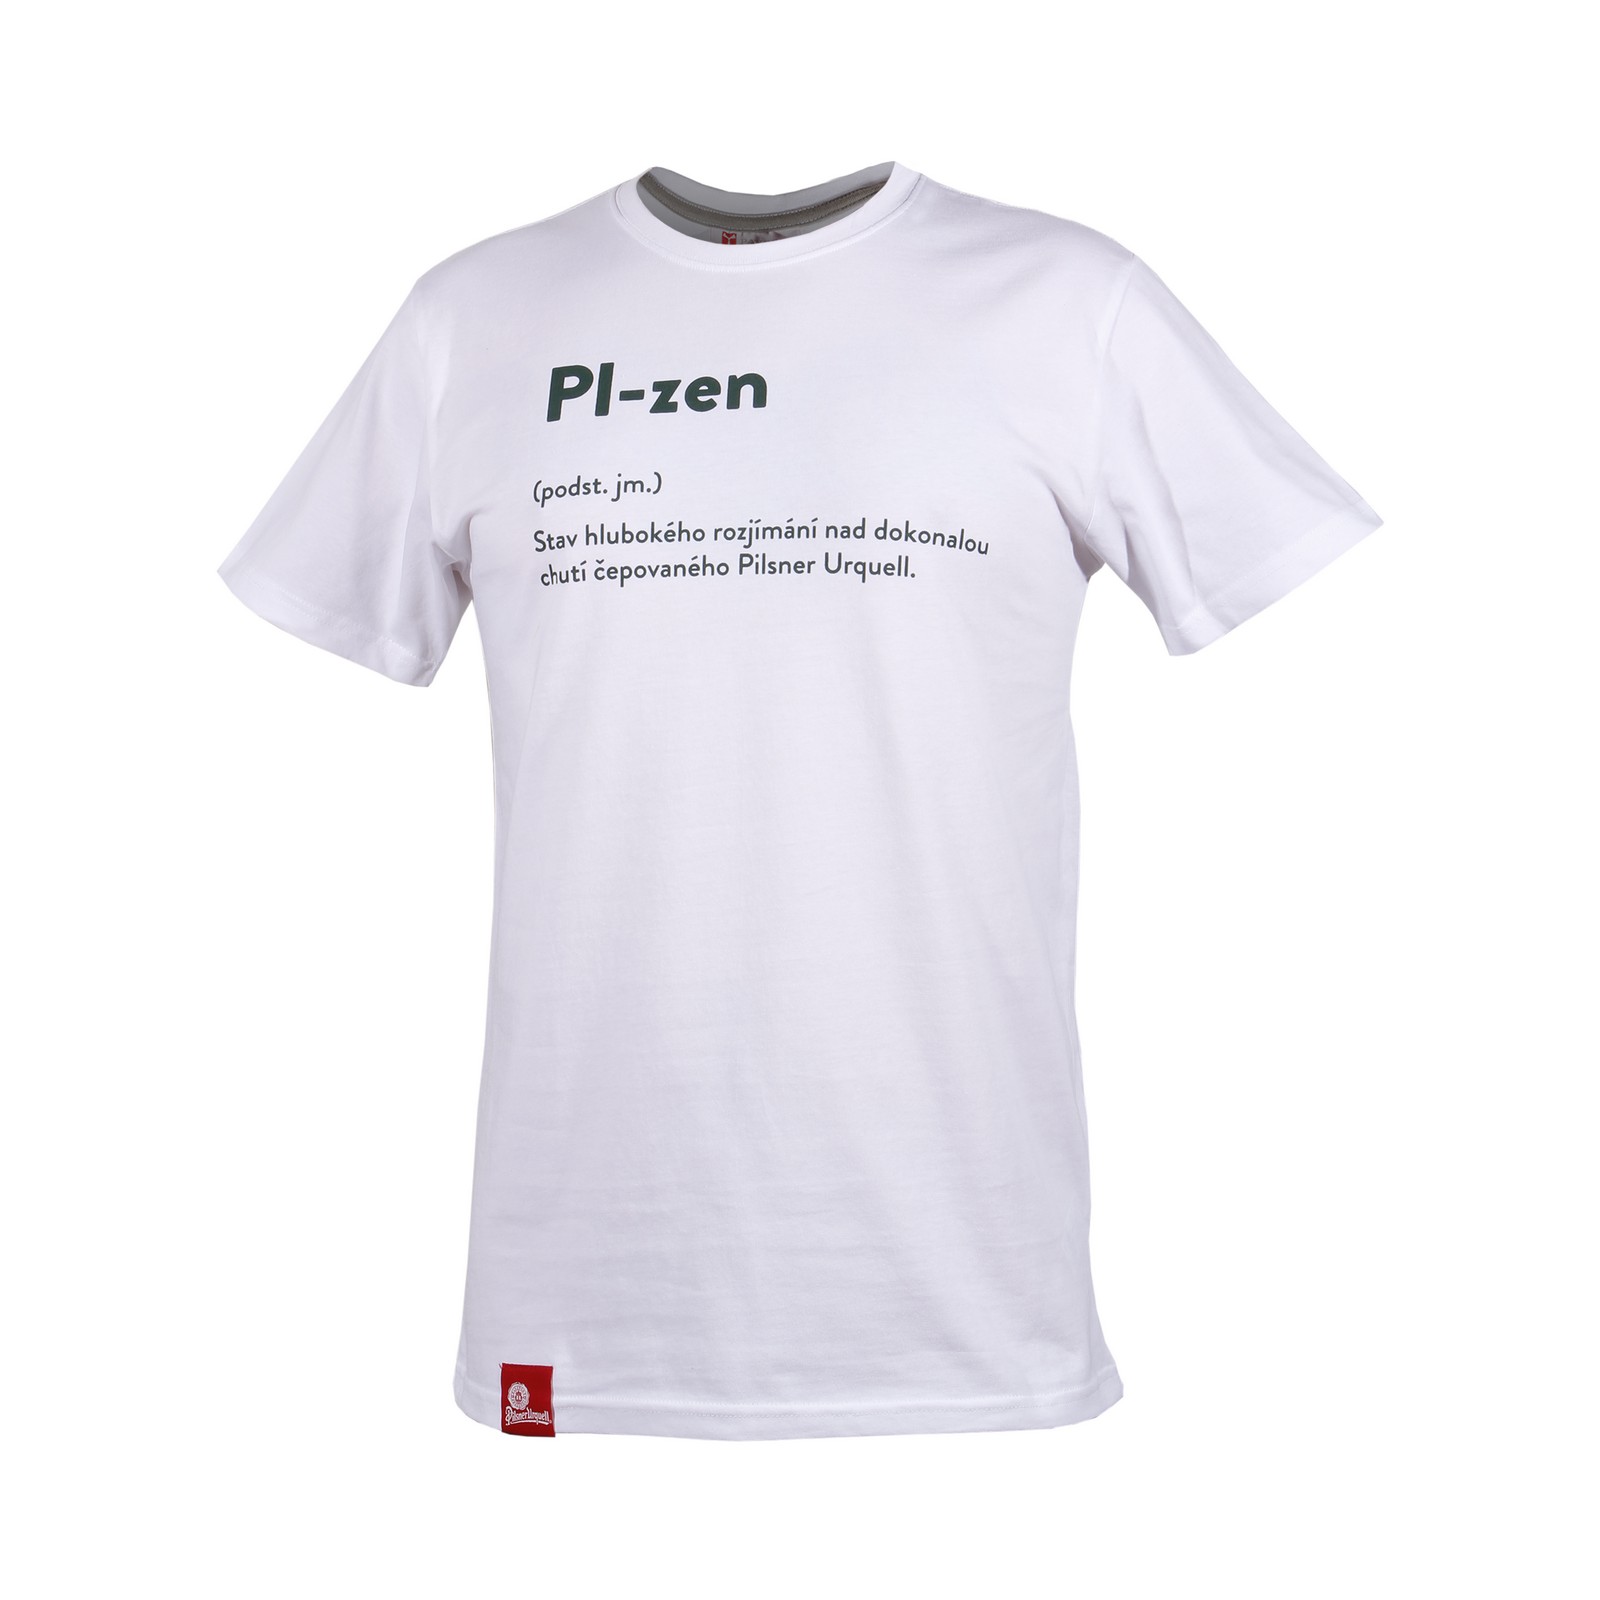 Herren T-shirt Pilsner Urquell - Pl-zen